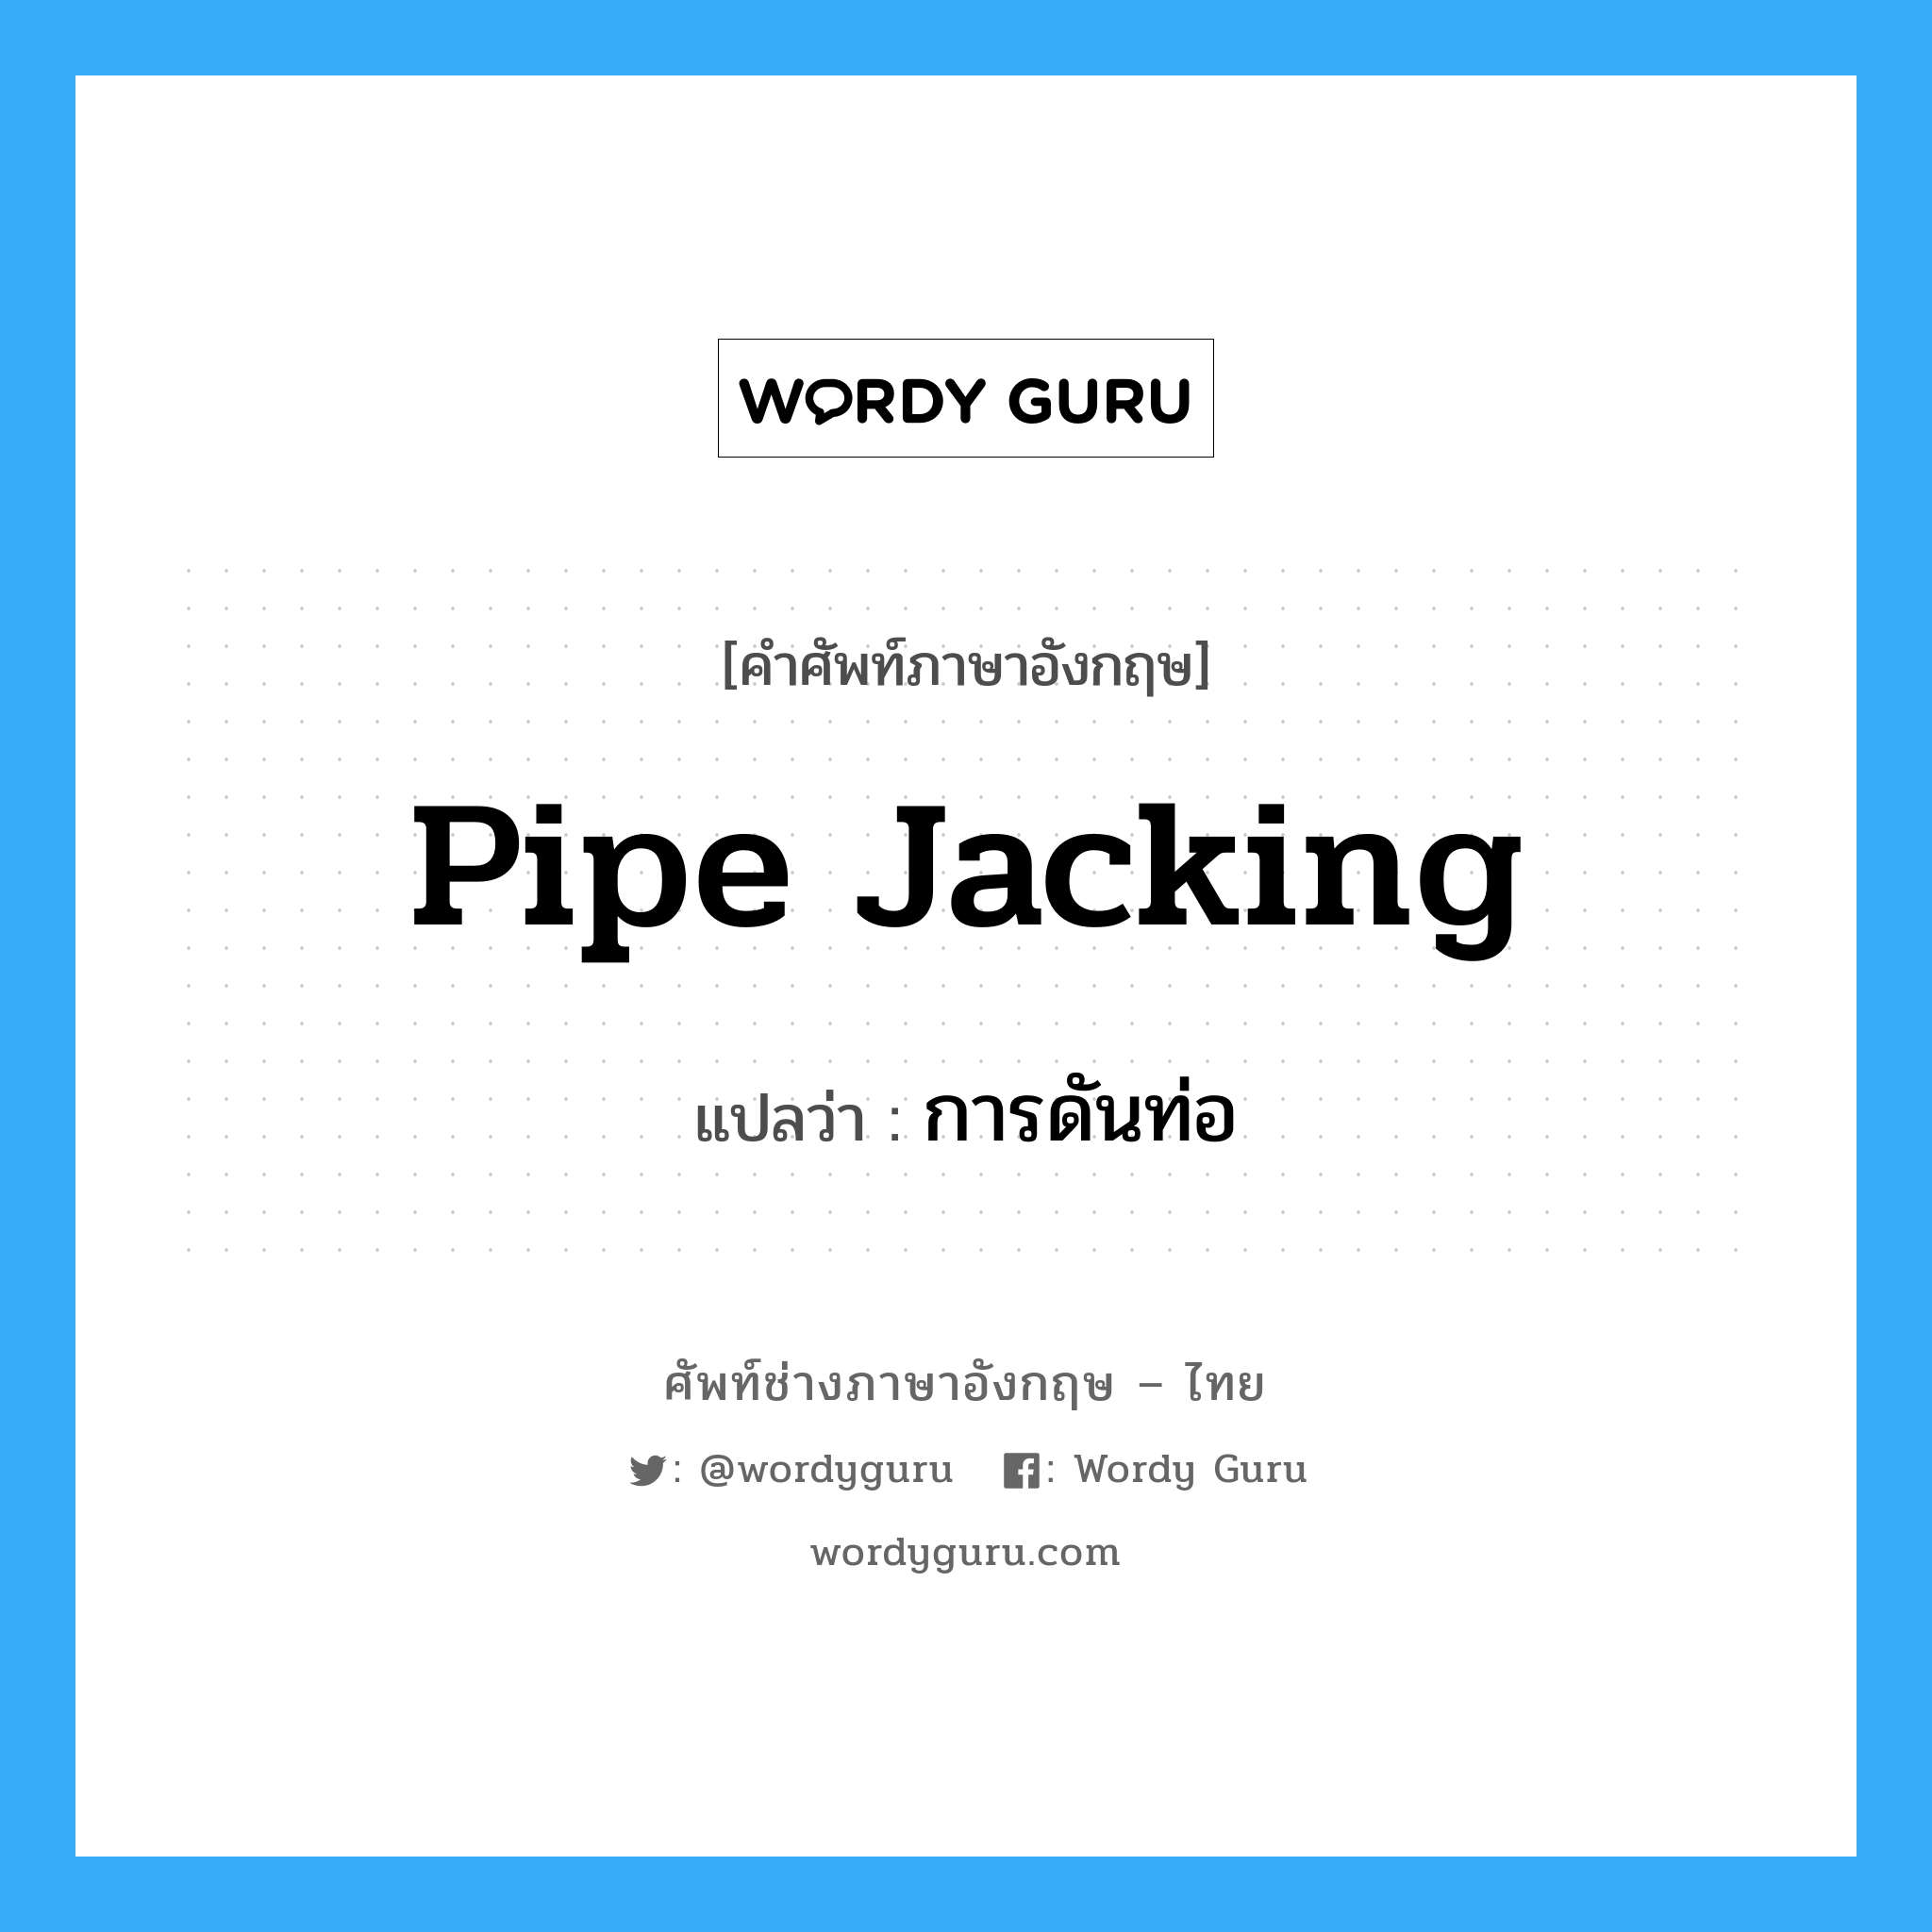 pipe jacking แปลว่า?, คำศัพท์ช่างภาษาอังกฤษ - ไทย pipe jacking คำศัพท์ภาษาอังกฤษ pipe jacking แปลว่า การดันท่อ